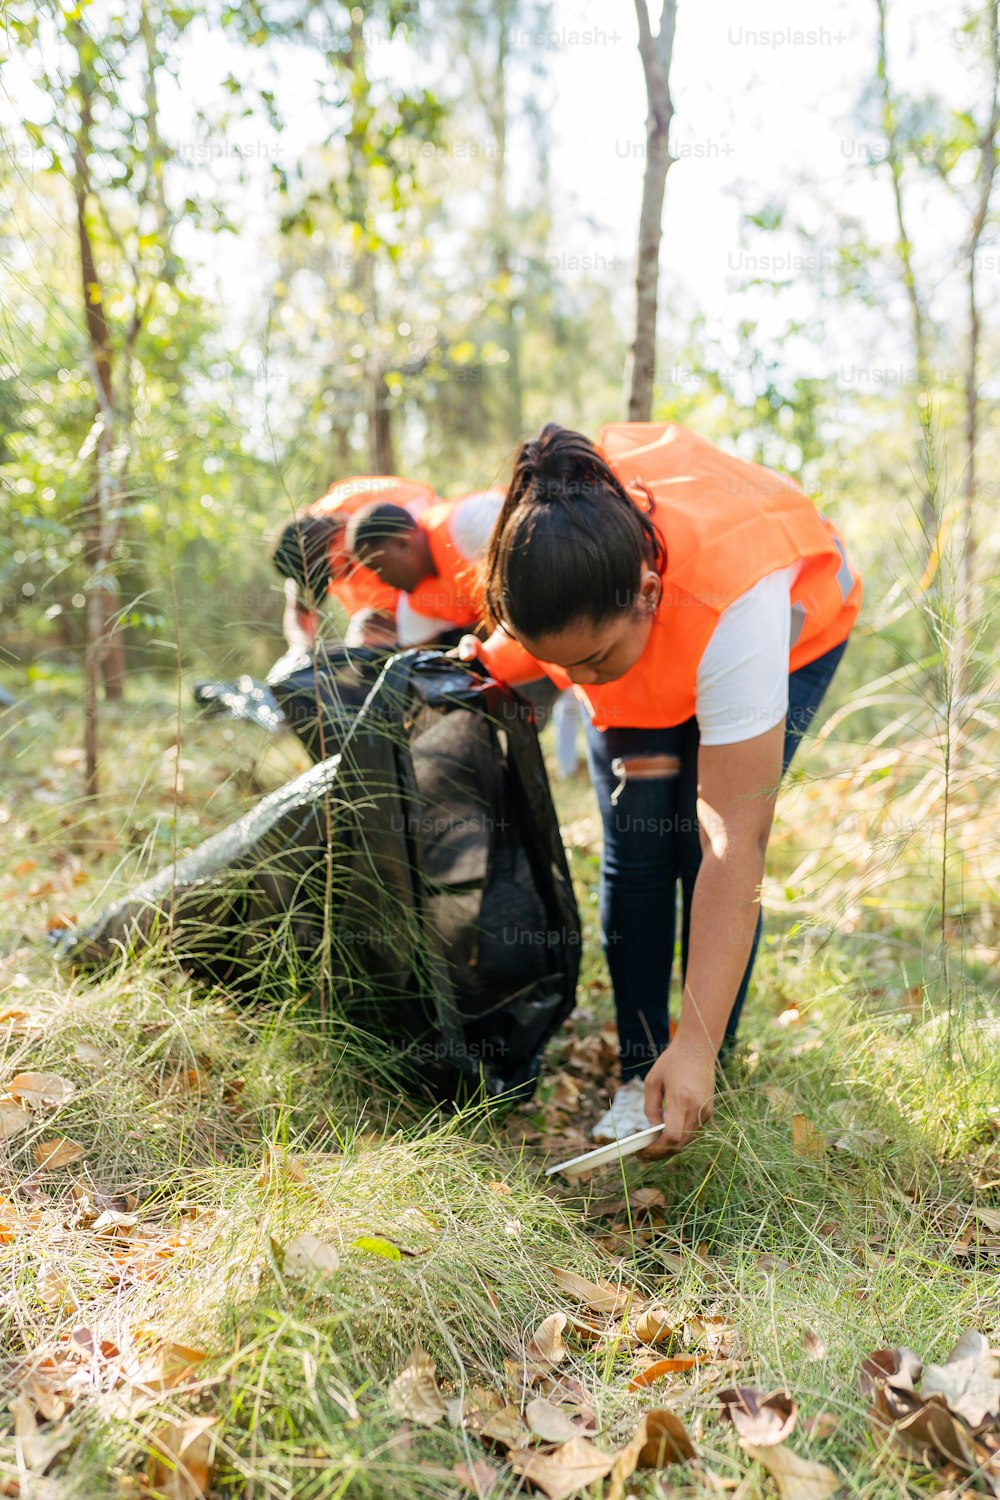 Una donna con un giubbotto arancione che raccoglie la spazzatura nel bosco